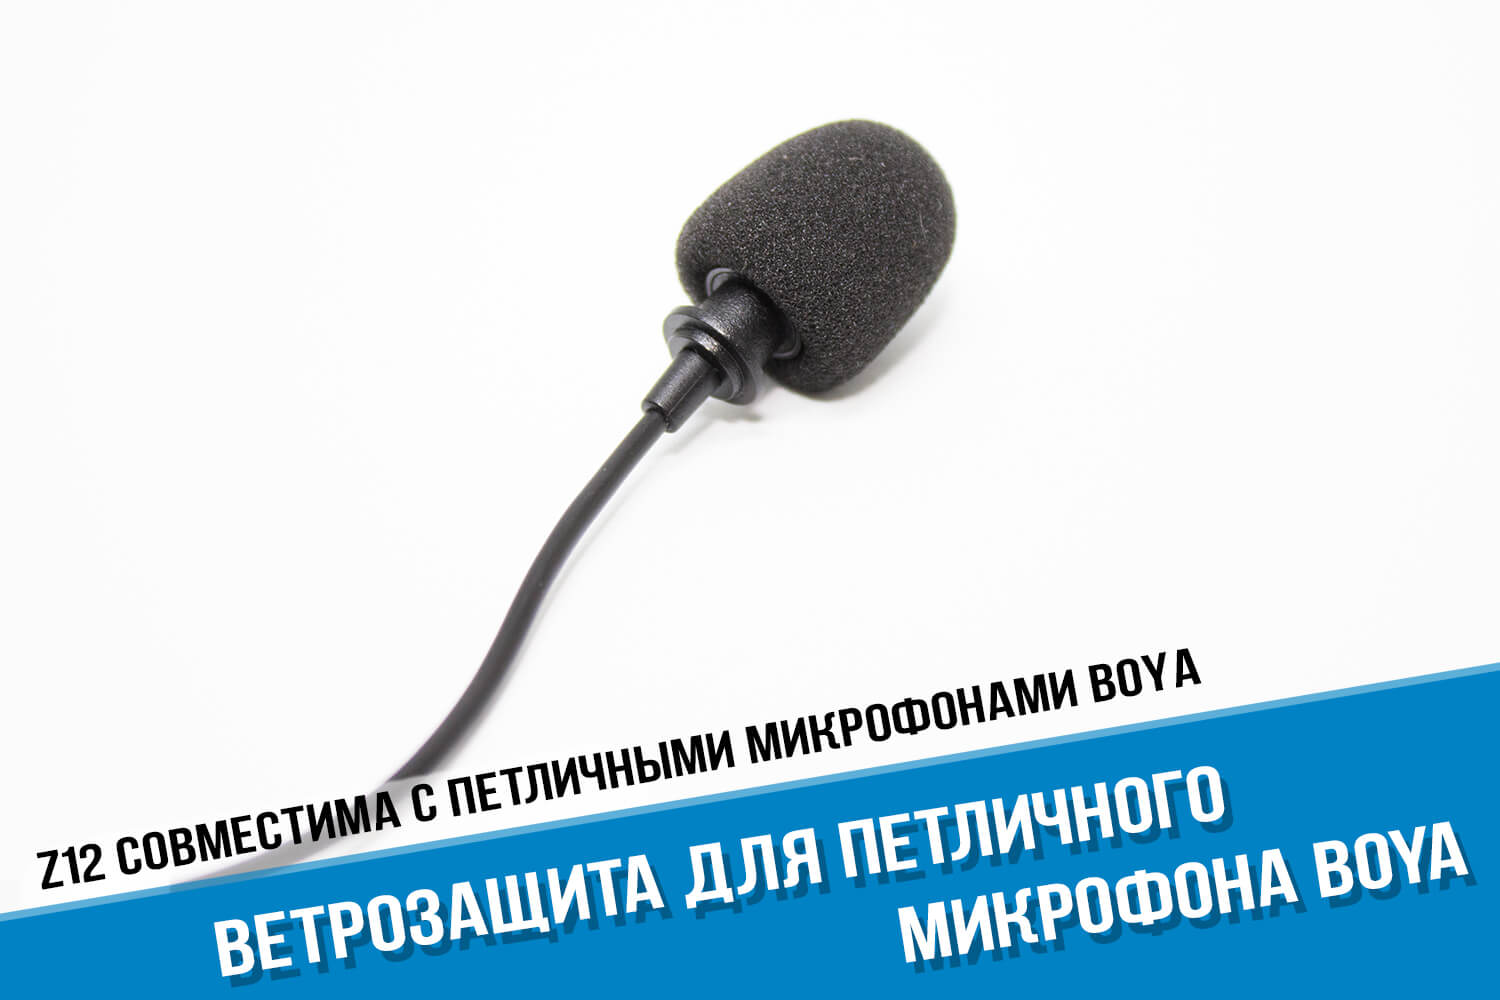 Ветрозащита для петличного микрофона Boya BY-M1